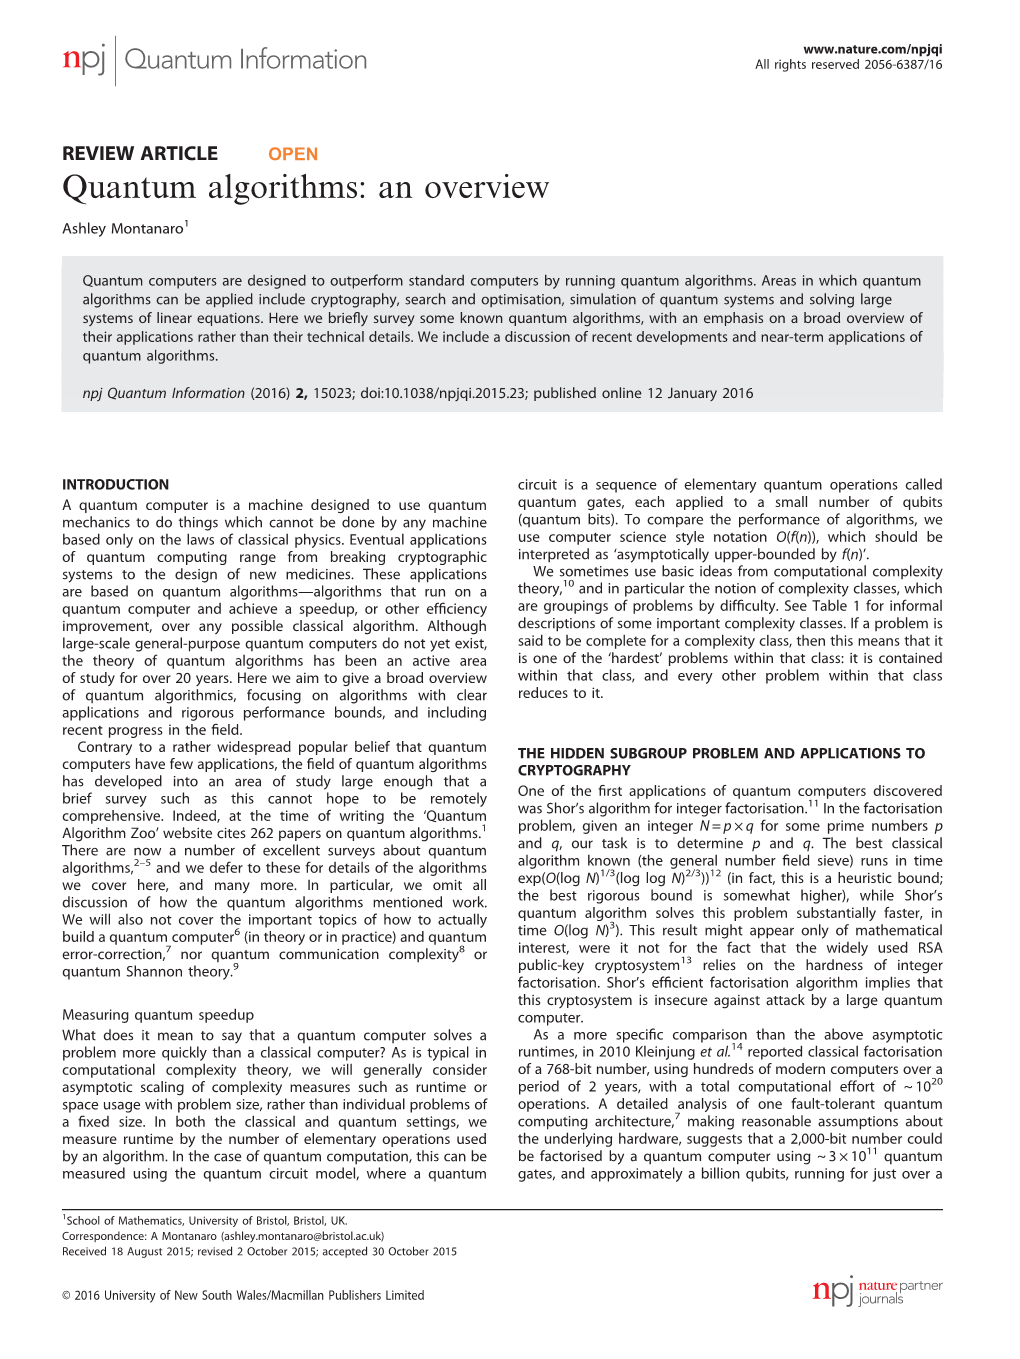 Quantum Algorithms: an Overview